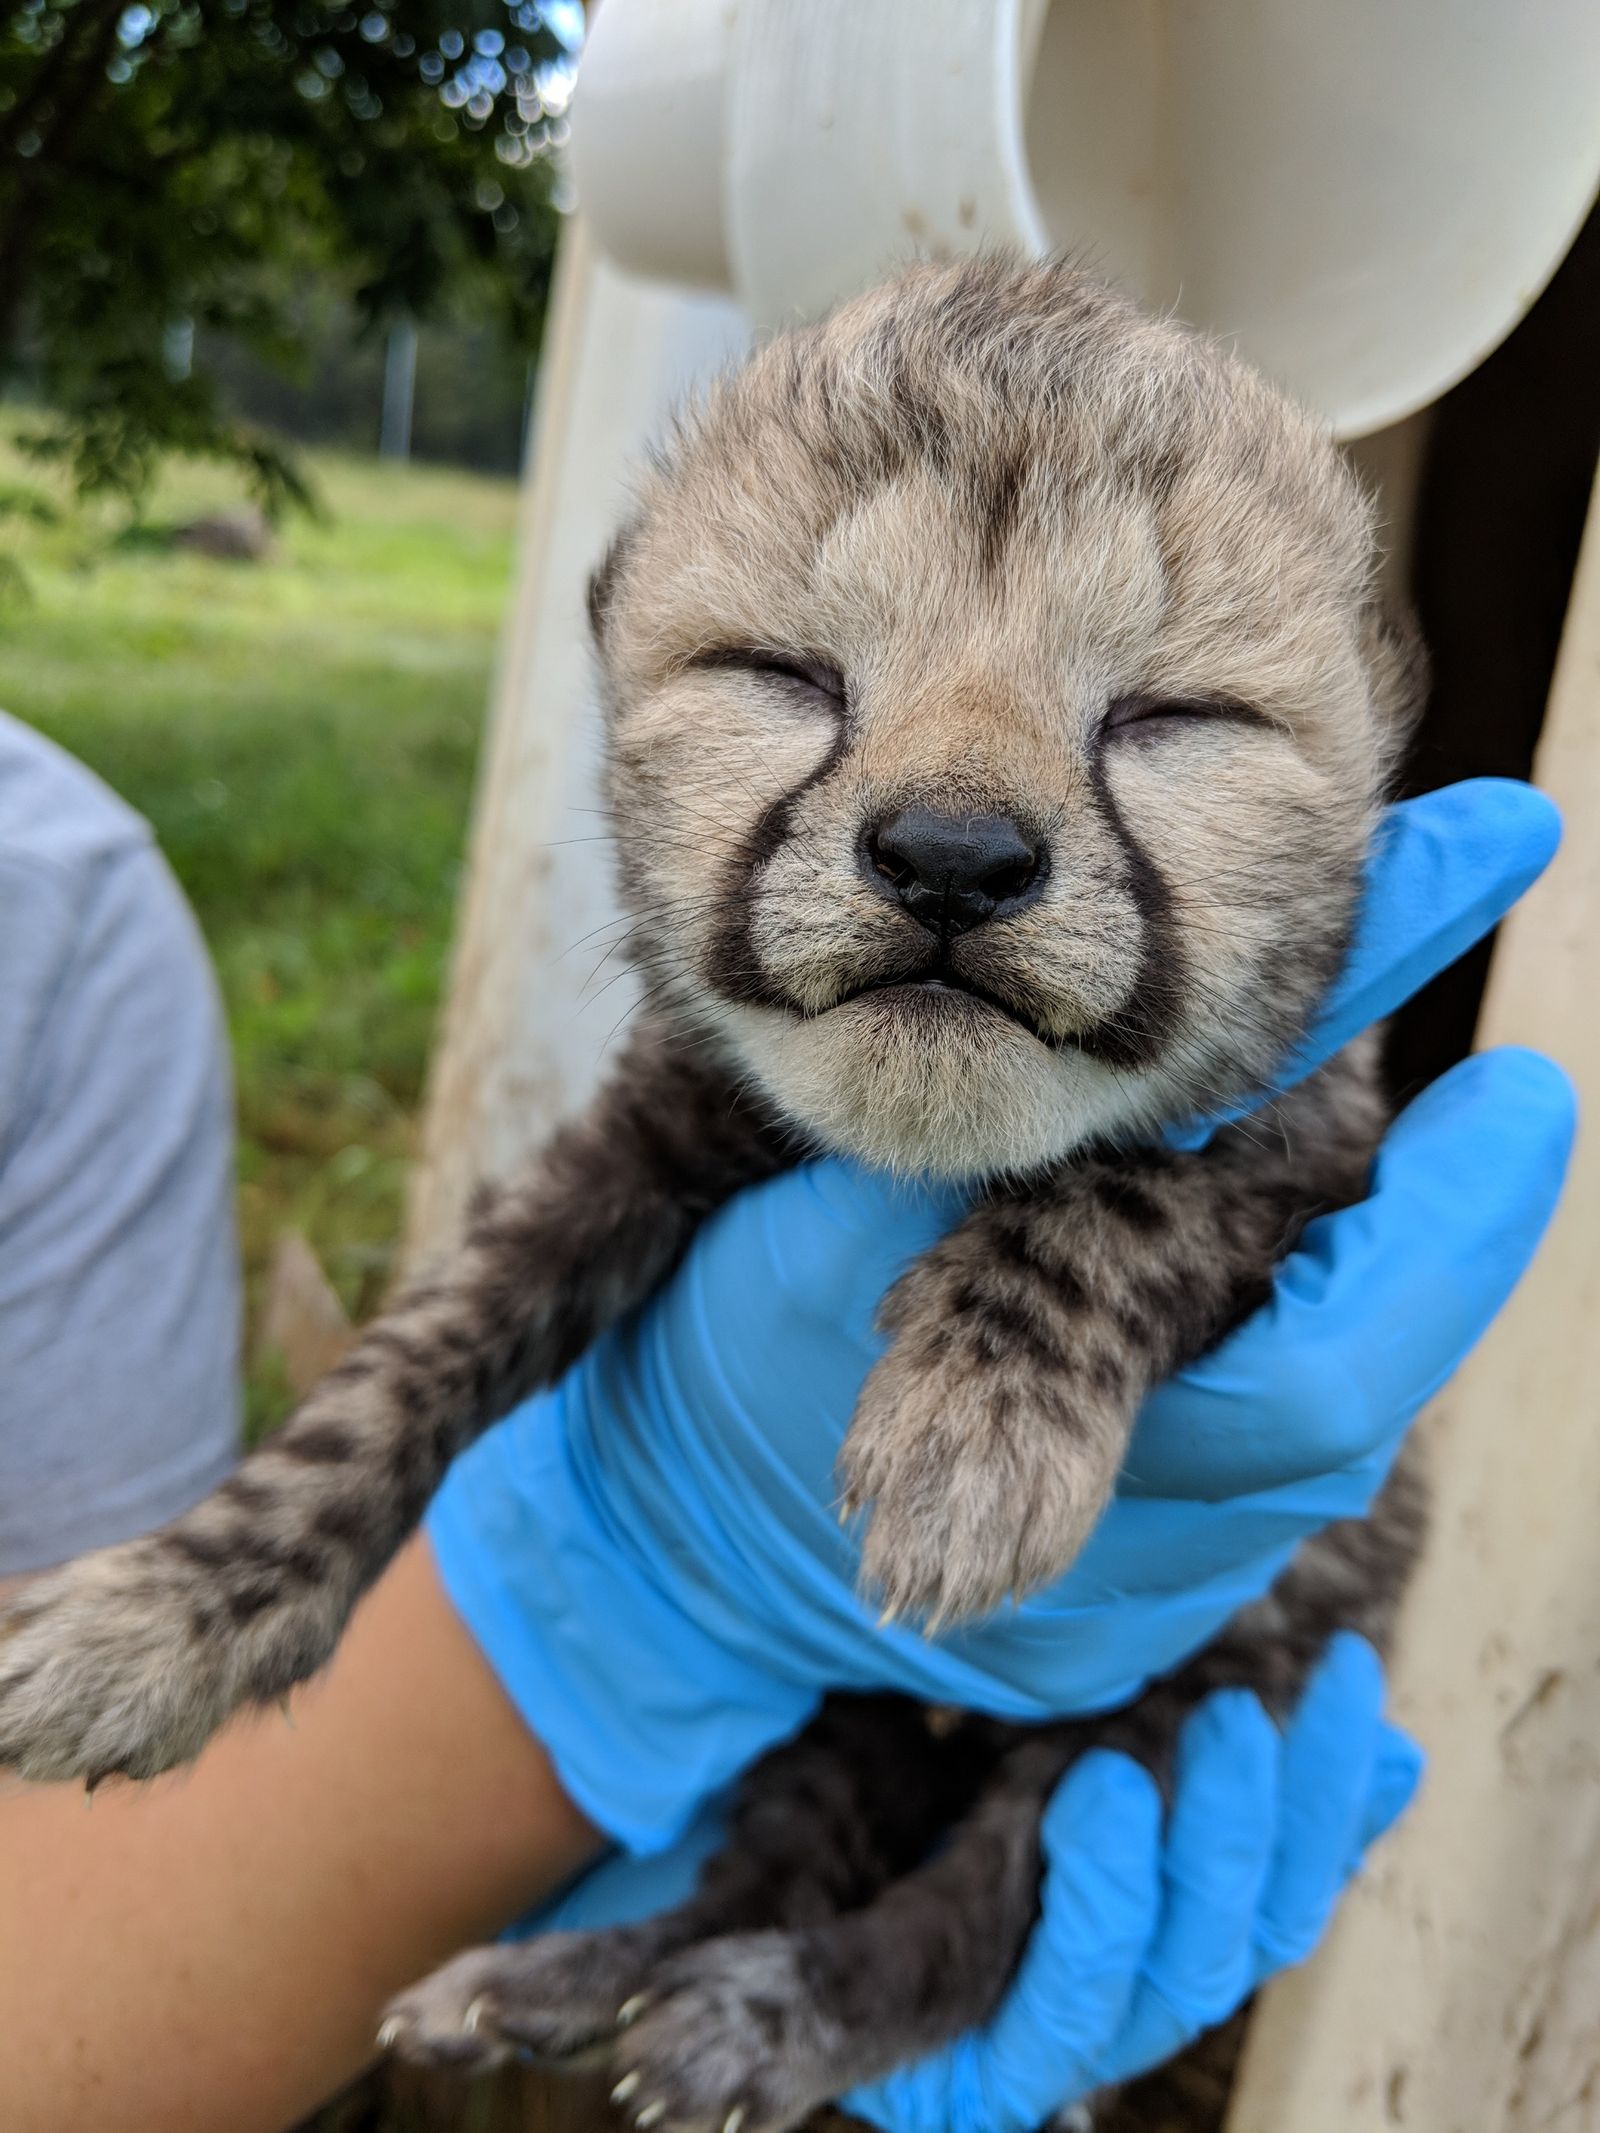 newborn baby cheetahs